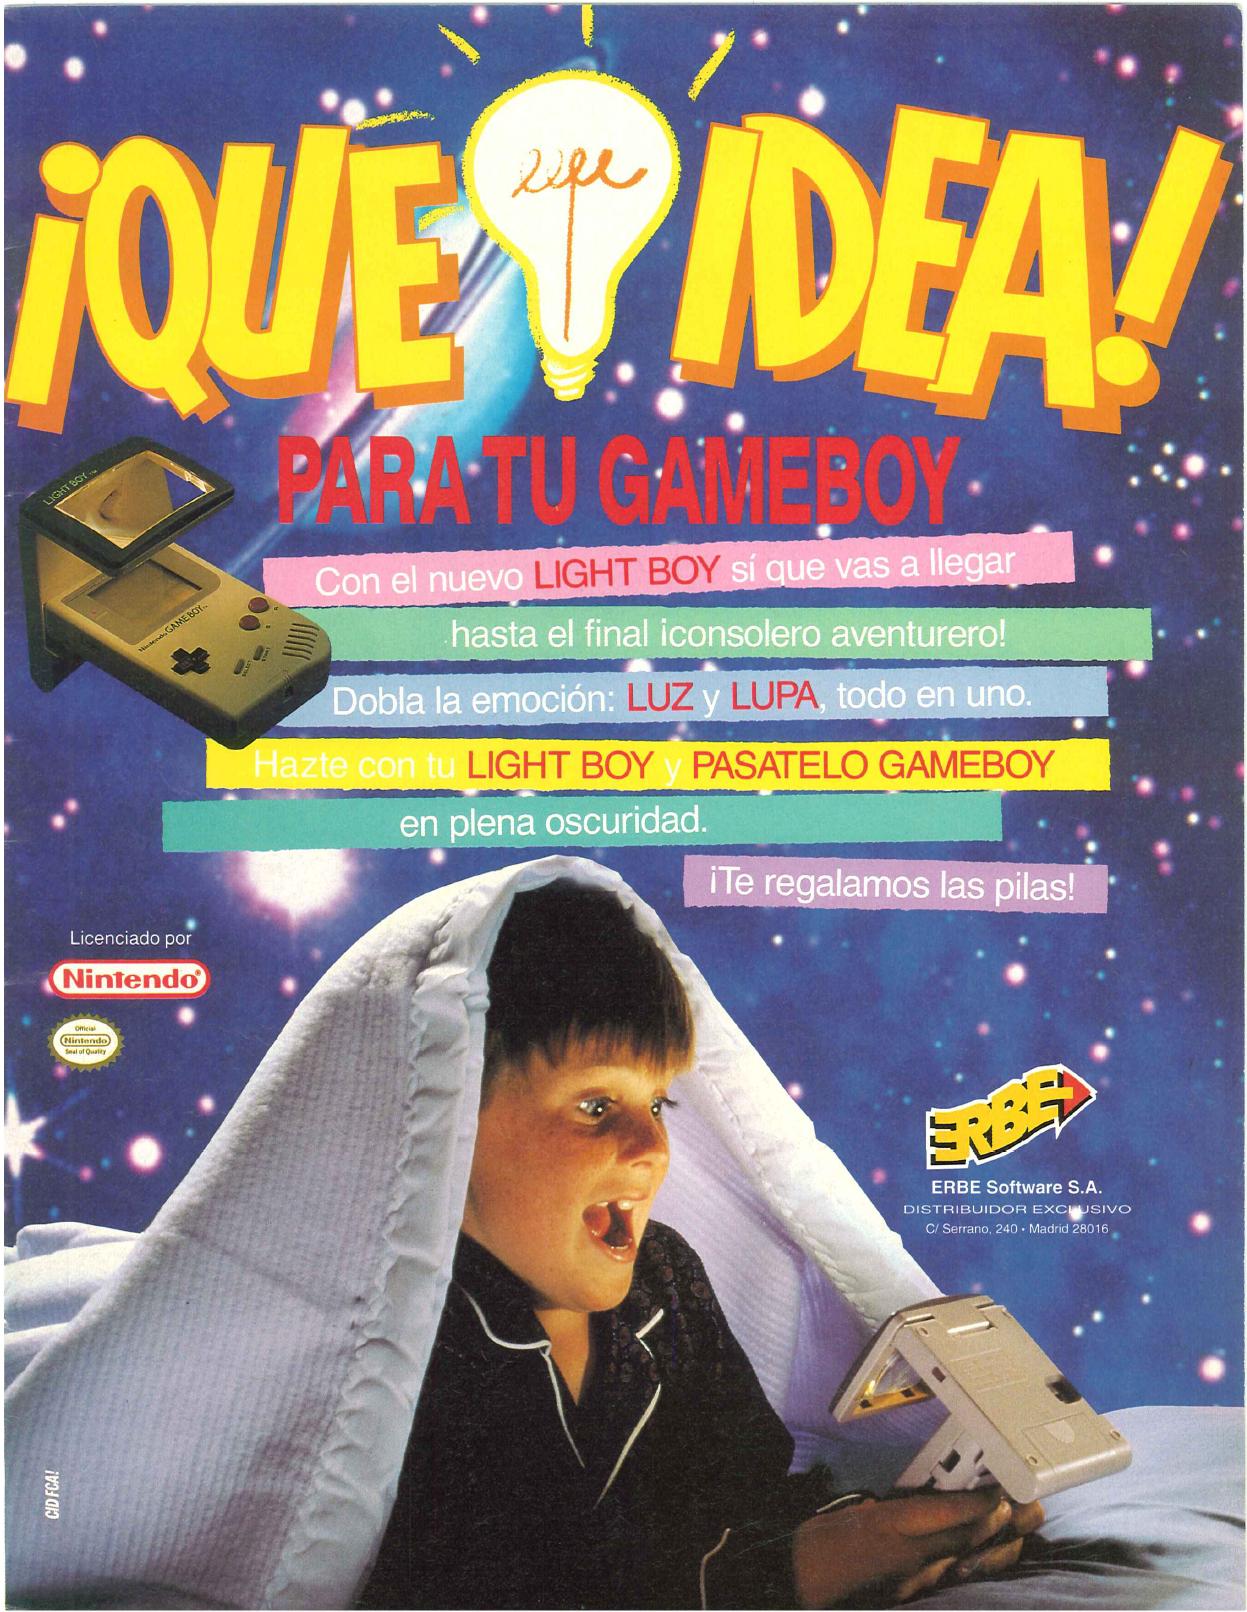 La publicidad de videojuegos en los años 90